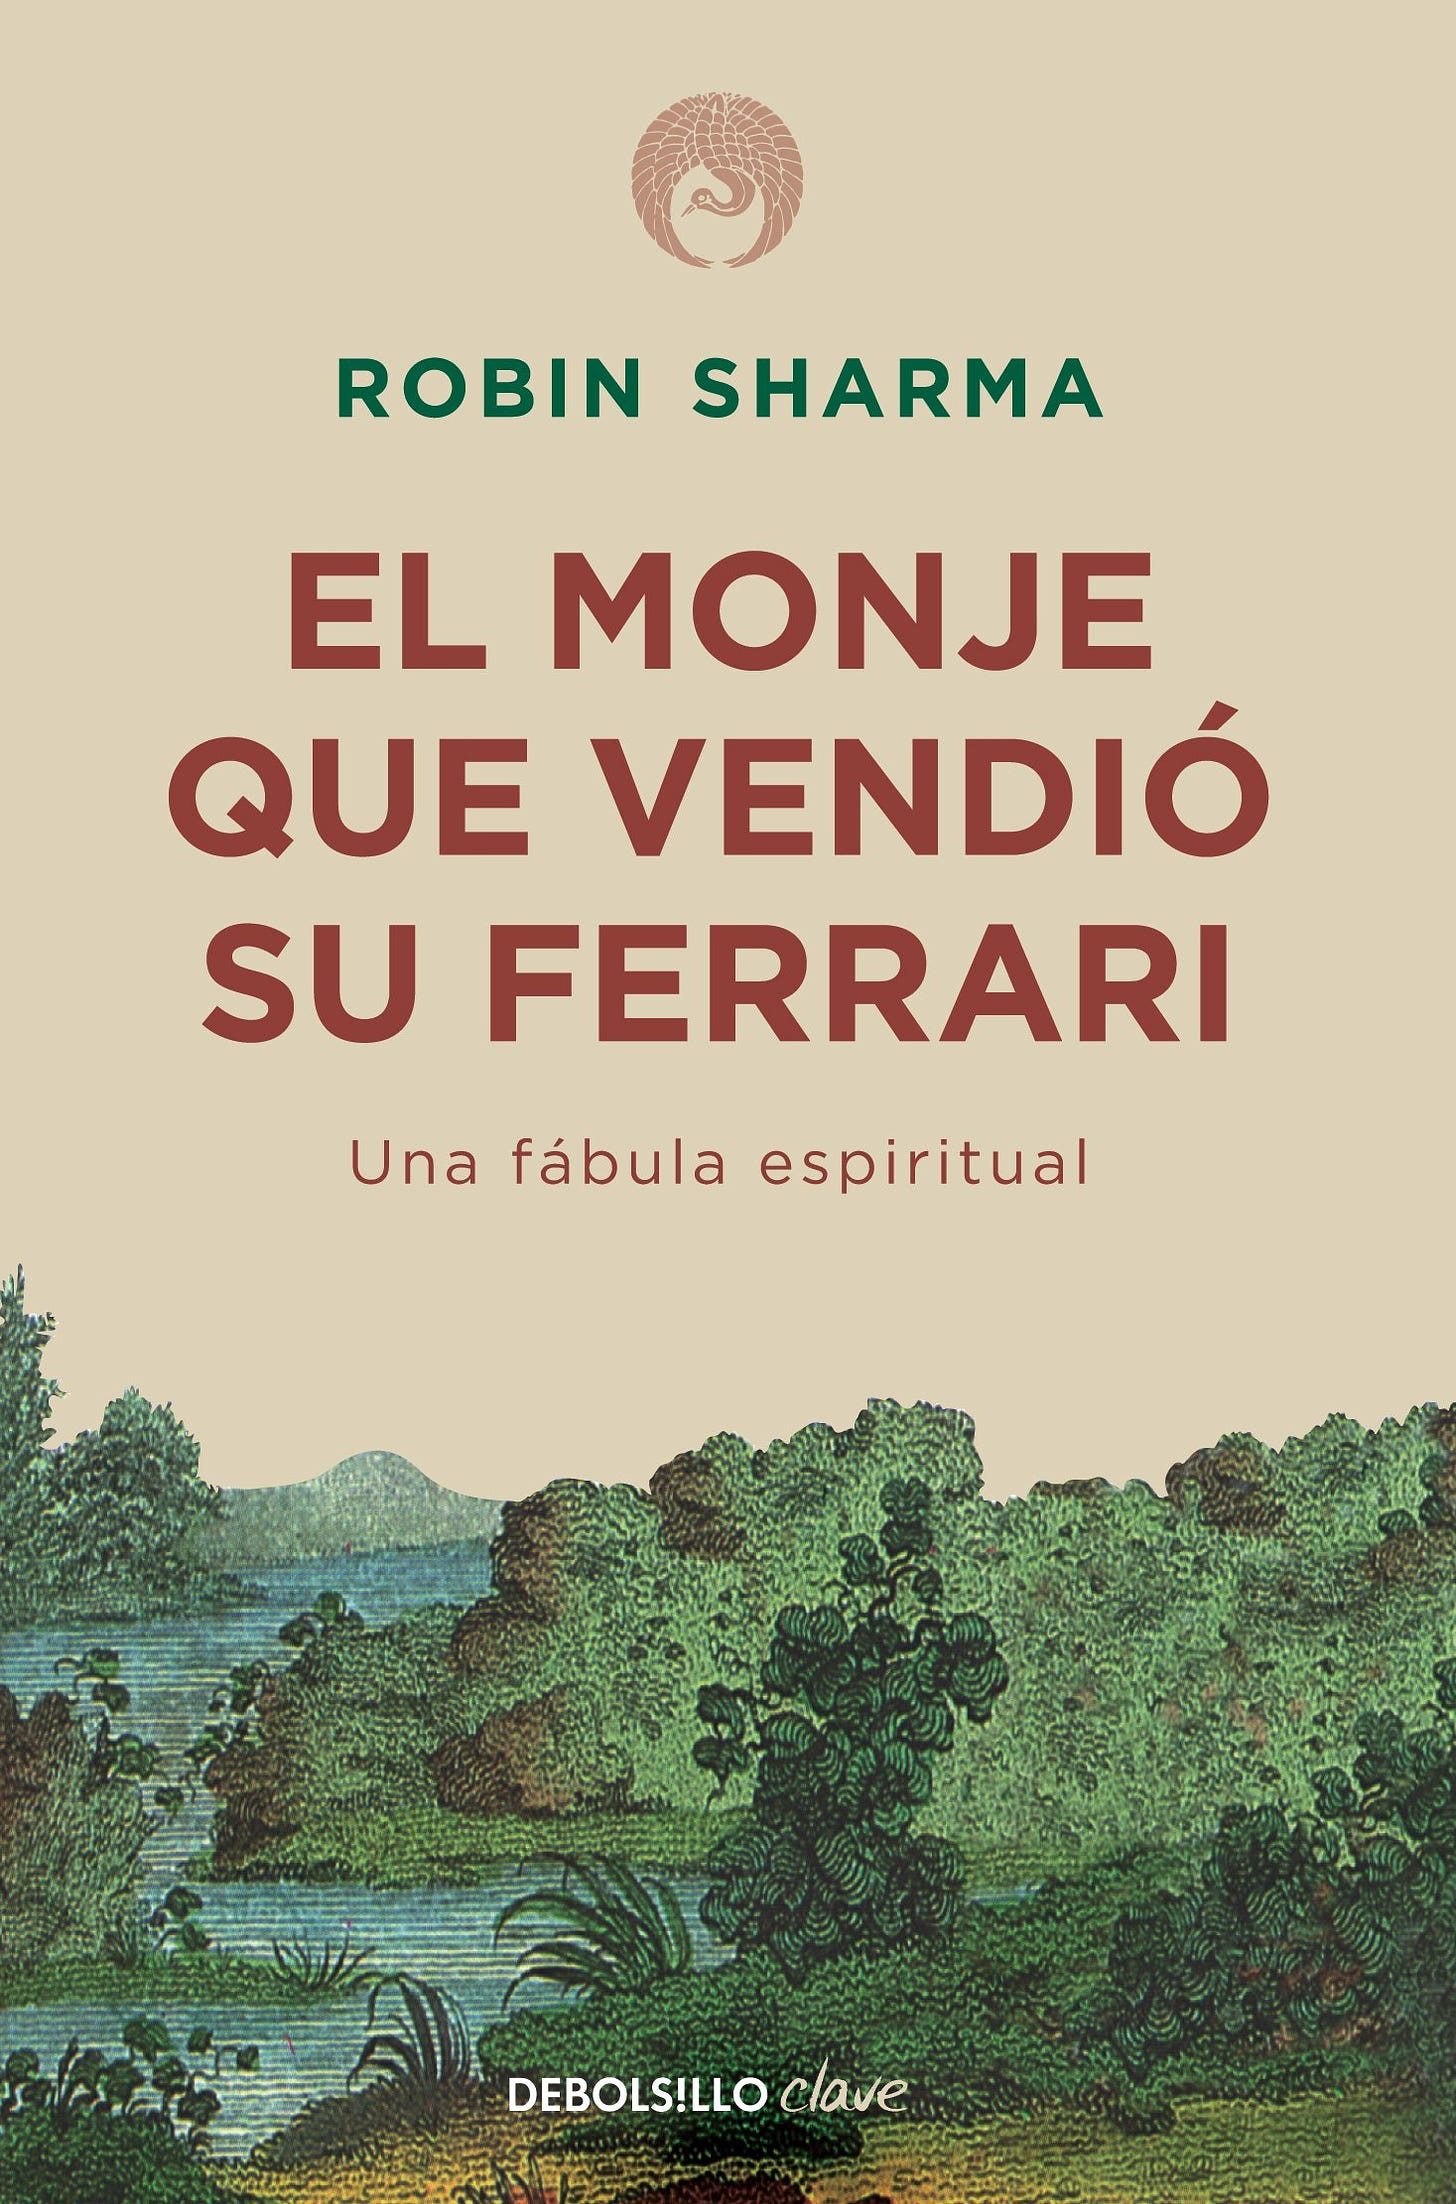 El monje que vendió su Ferrari : Robin S. Sharma: Amazon.com.mx: Libros